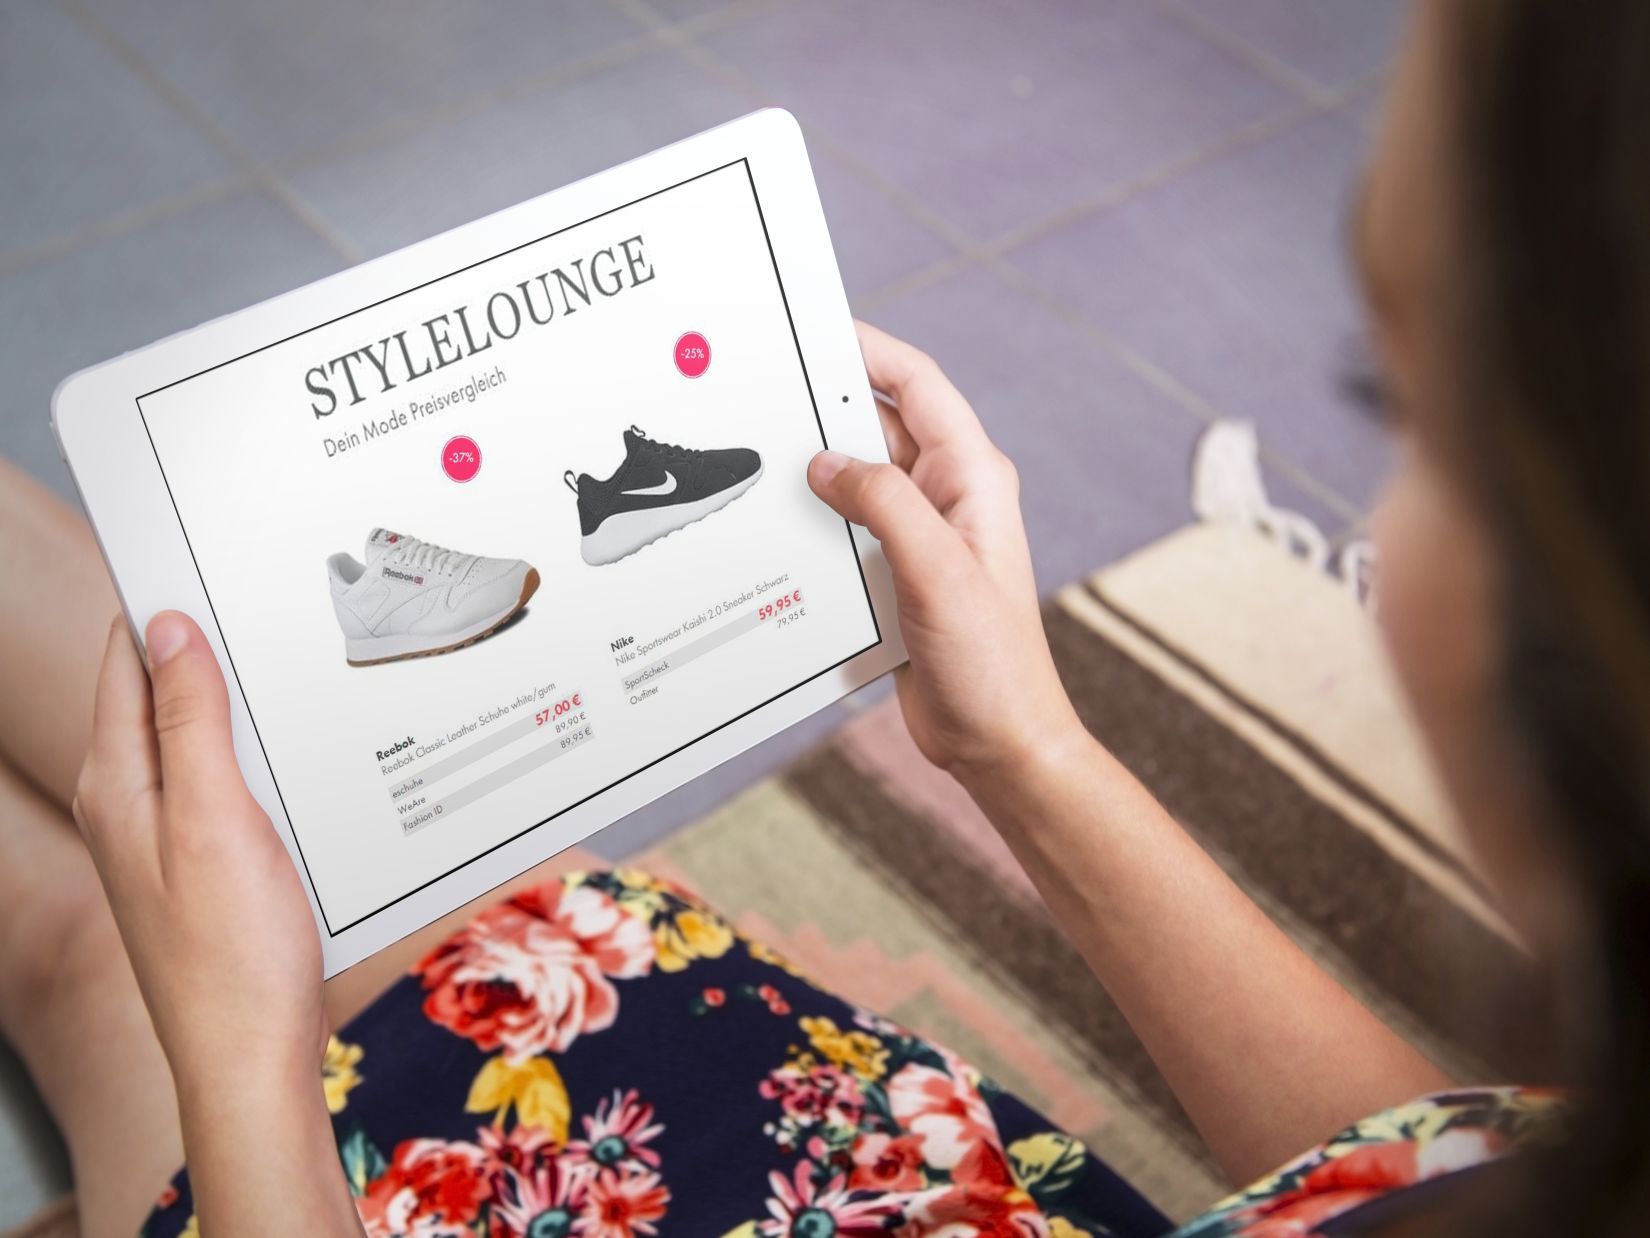 Sneaker zum günstigsten Preis finden: 7 unschlagbare Geheim-Tipps für Online-Shopper / Wie man mit einfachen Tricks bares Geld beim Sneaker-Kauf sparen kann / Preisvergleiche verschaffen Verbrauchern einen schnellen Überblick über viele Händler und helfen so schnell die günstigsten Angebote zu identifizieren. Für Mode und Schuhe eignet sich beispielsweise StyleLounge, eine spezialisierte  Mode-Preisvergleichsseite. Weiterer Text über ots und www.presseportal.de/nr/126985 / Die Verwendung dieses Bildes ist für redaktionelle Zwecke honorarfrei. Veröffentlichung bitte unter Quellenangabe: "obs/StyleLounge GmbH/Foto: placeit.net"